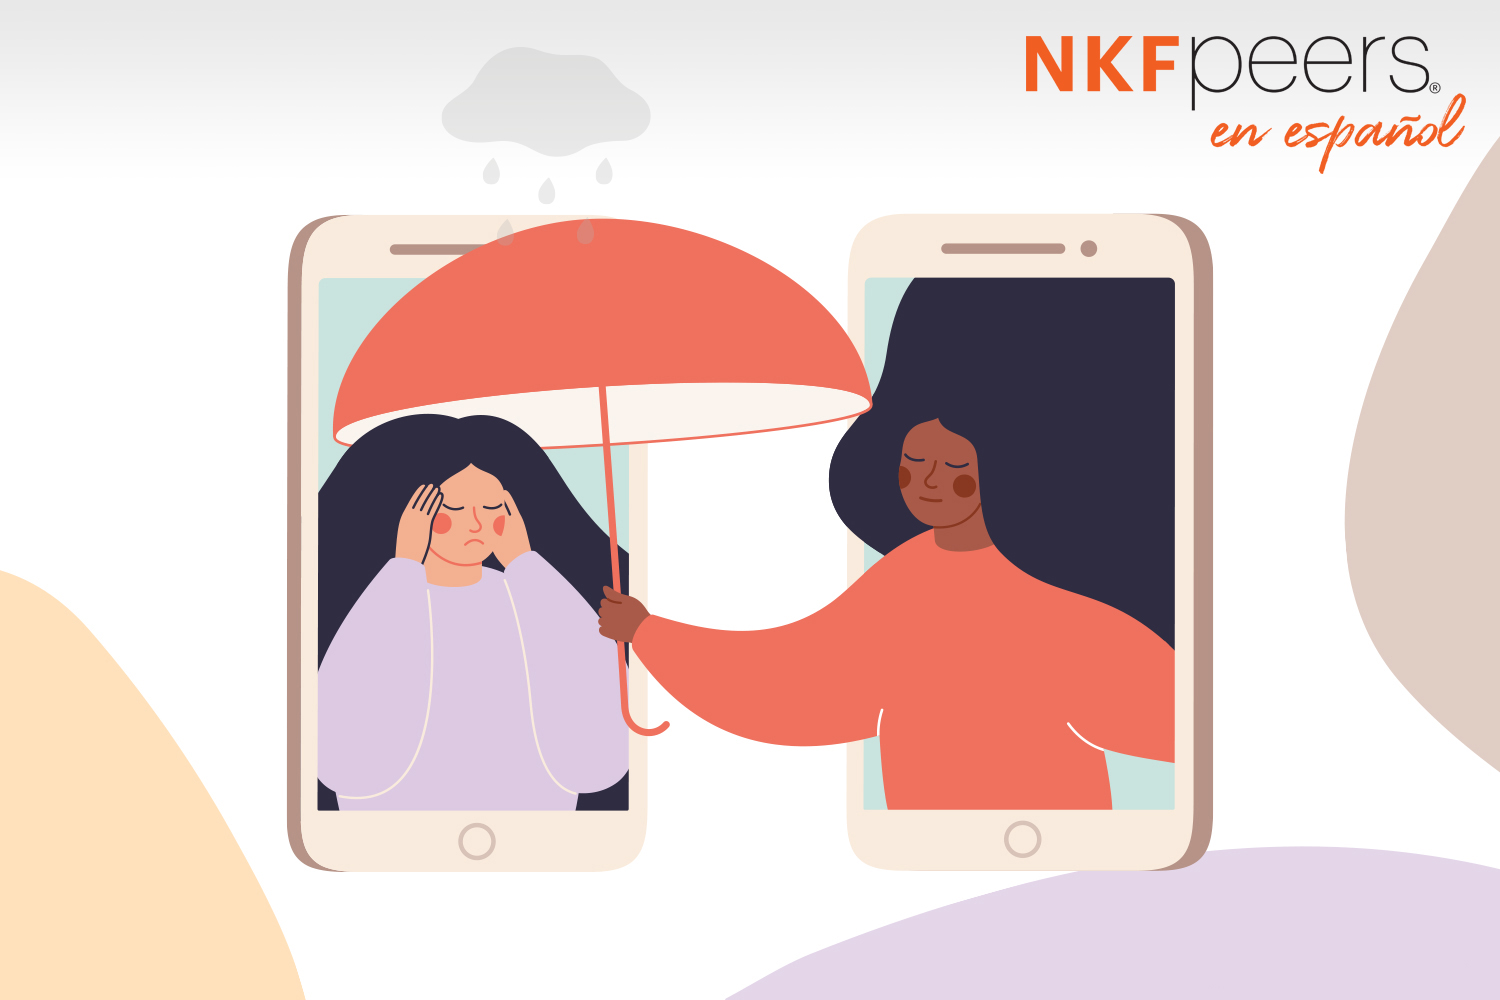 Ilustración de dos personas, cada una dentro de un teléfono inteligente, una está molesta y la otra le entrega un paraguas, con el logotipo de NKF Peers